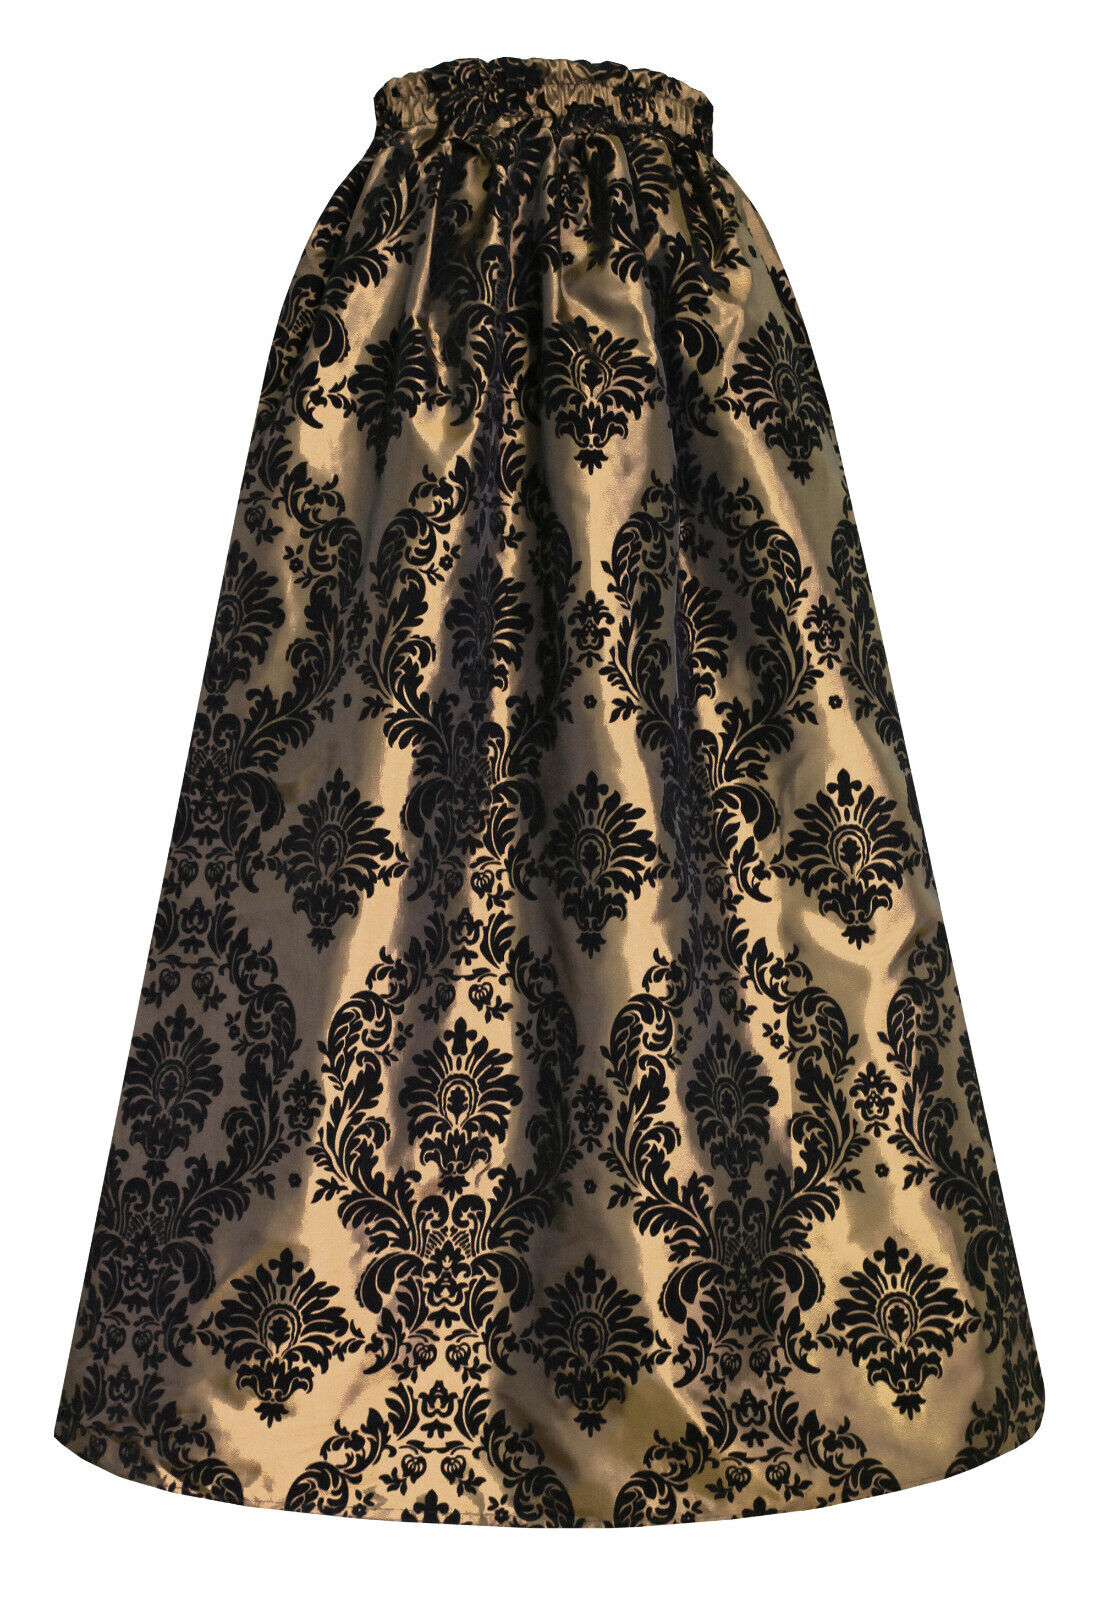 Women's Elegant Pleated Formal Occasion Patterned Full Long Skirt Reg Plus